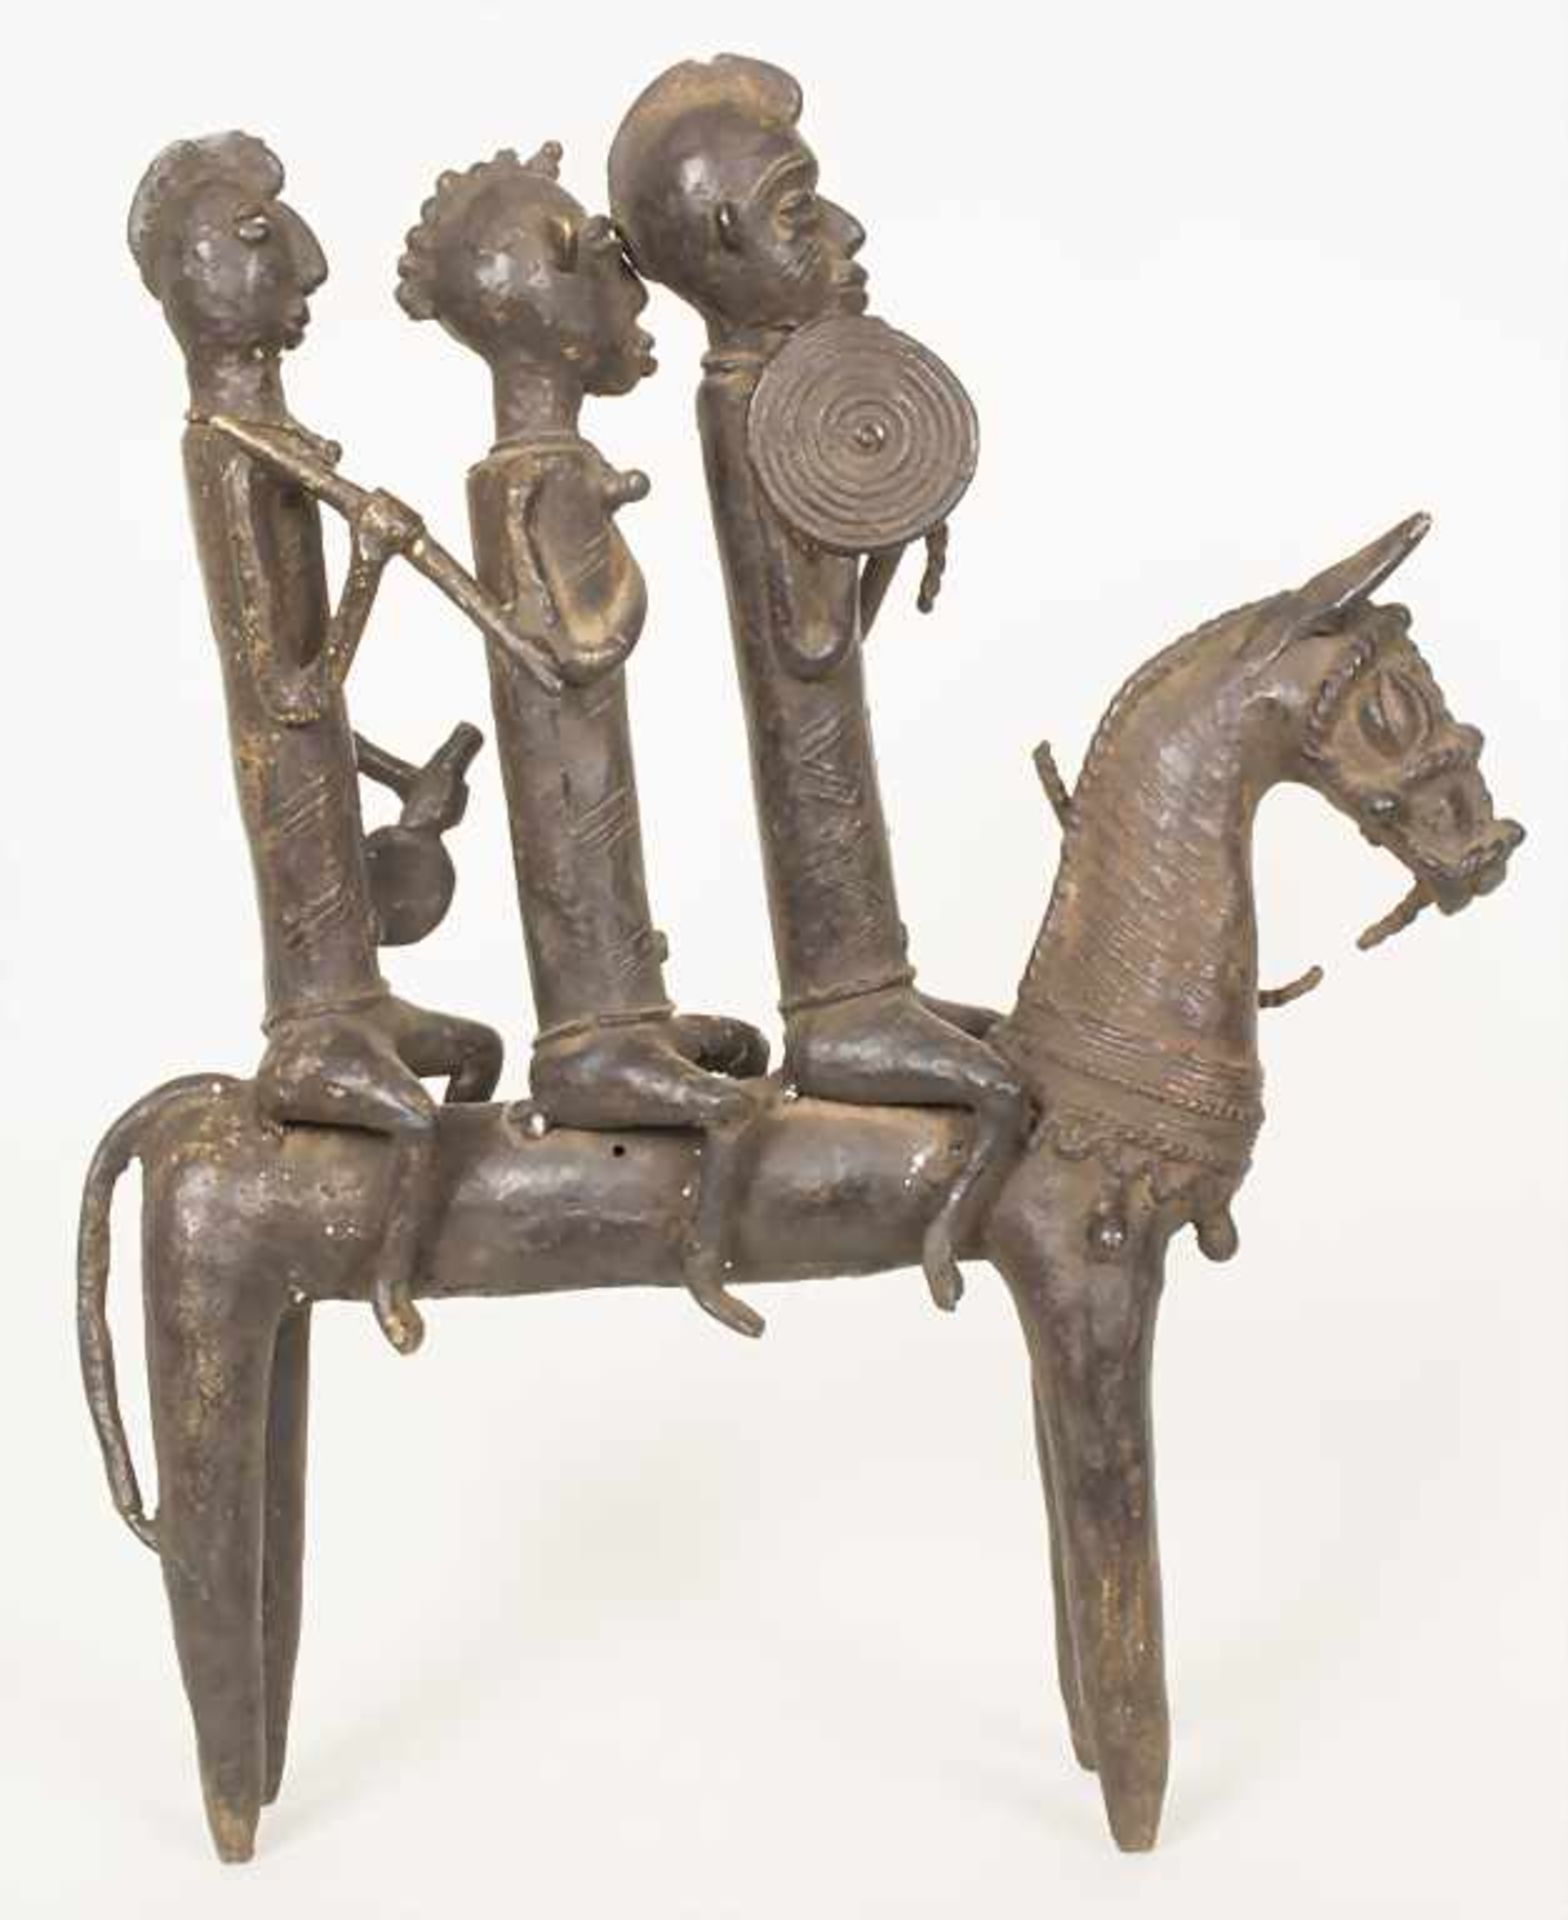 Reiterfigur, Kotoko, Tschad, 2. Hälfte 20. Jh.Material: Bronze, braun patiniert,Höhe: 45,5 cm, - Bild 3 aus 5